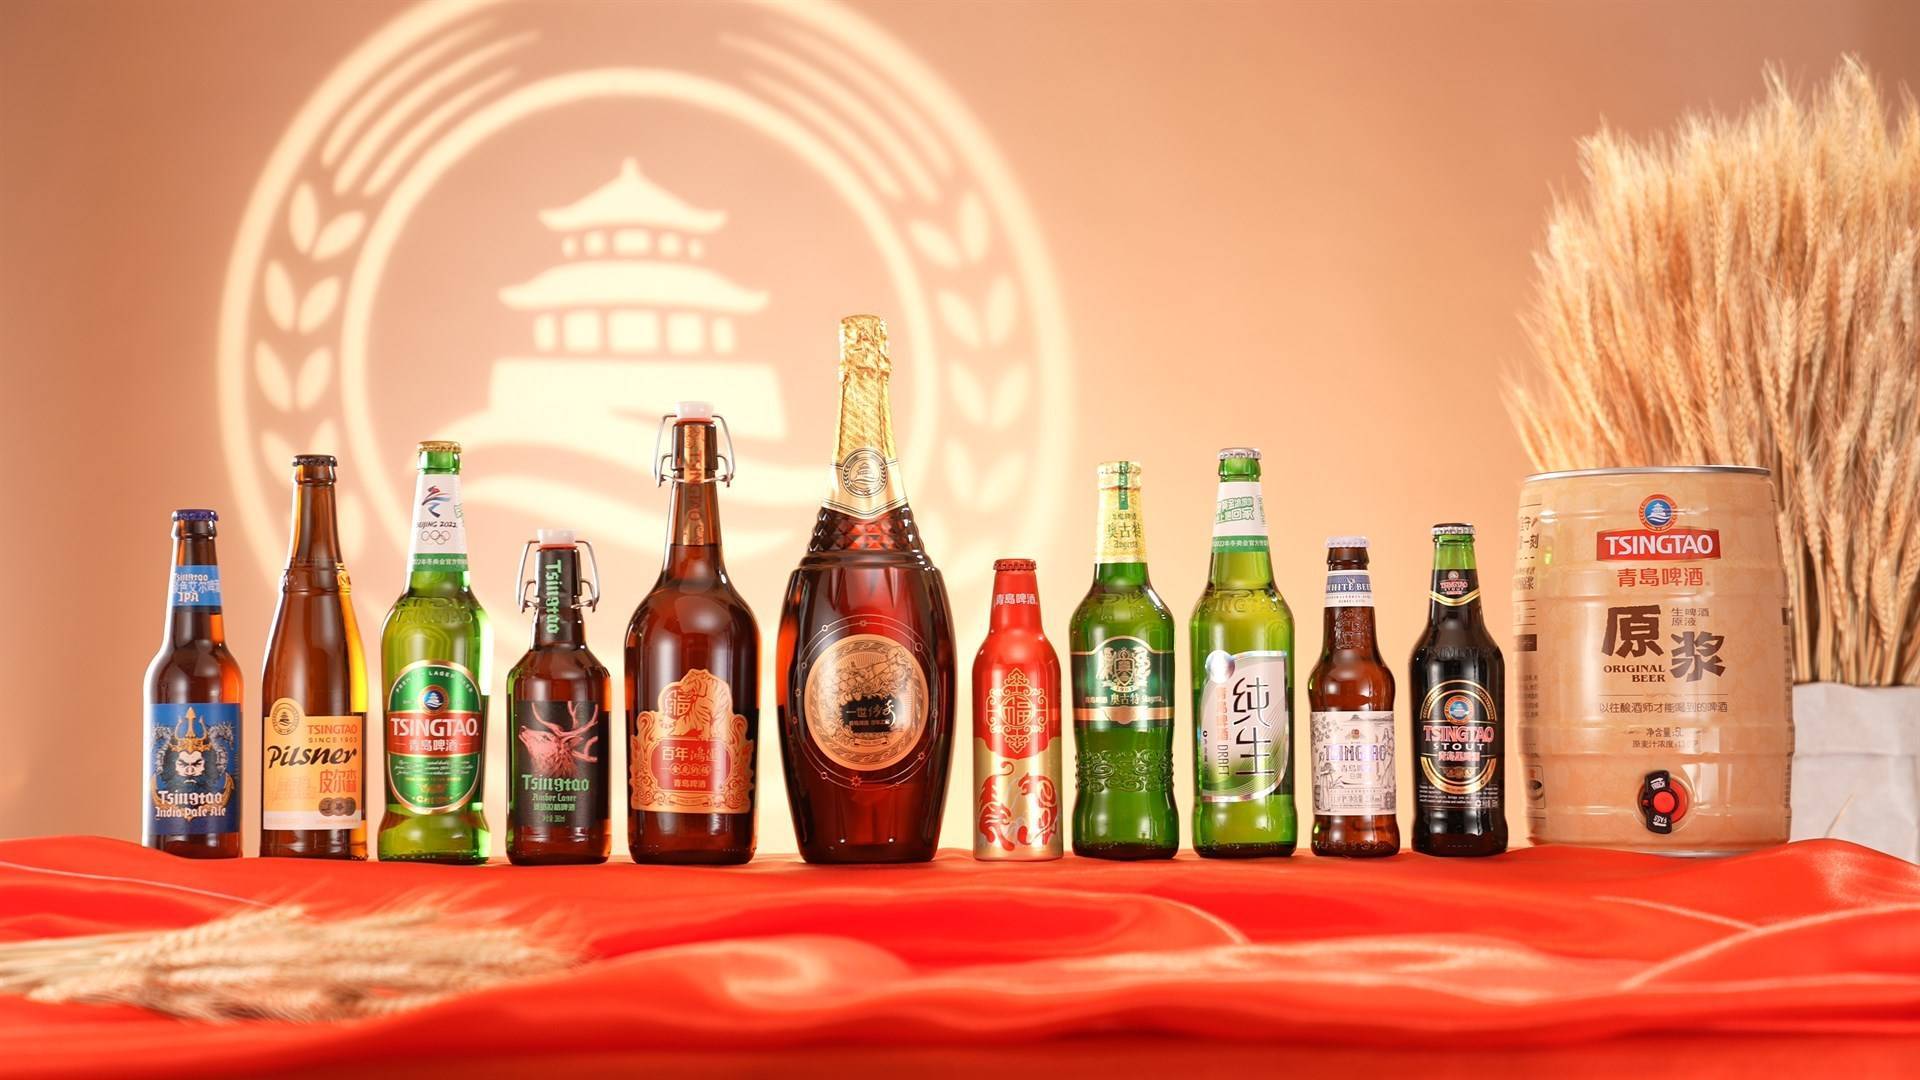 青岛啤酒的照片 壁纸图片